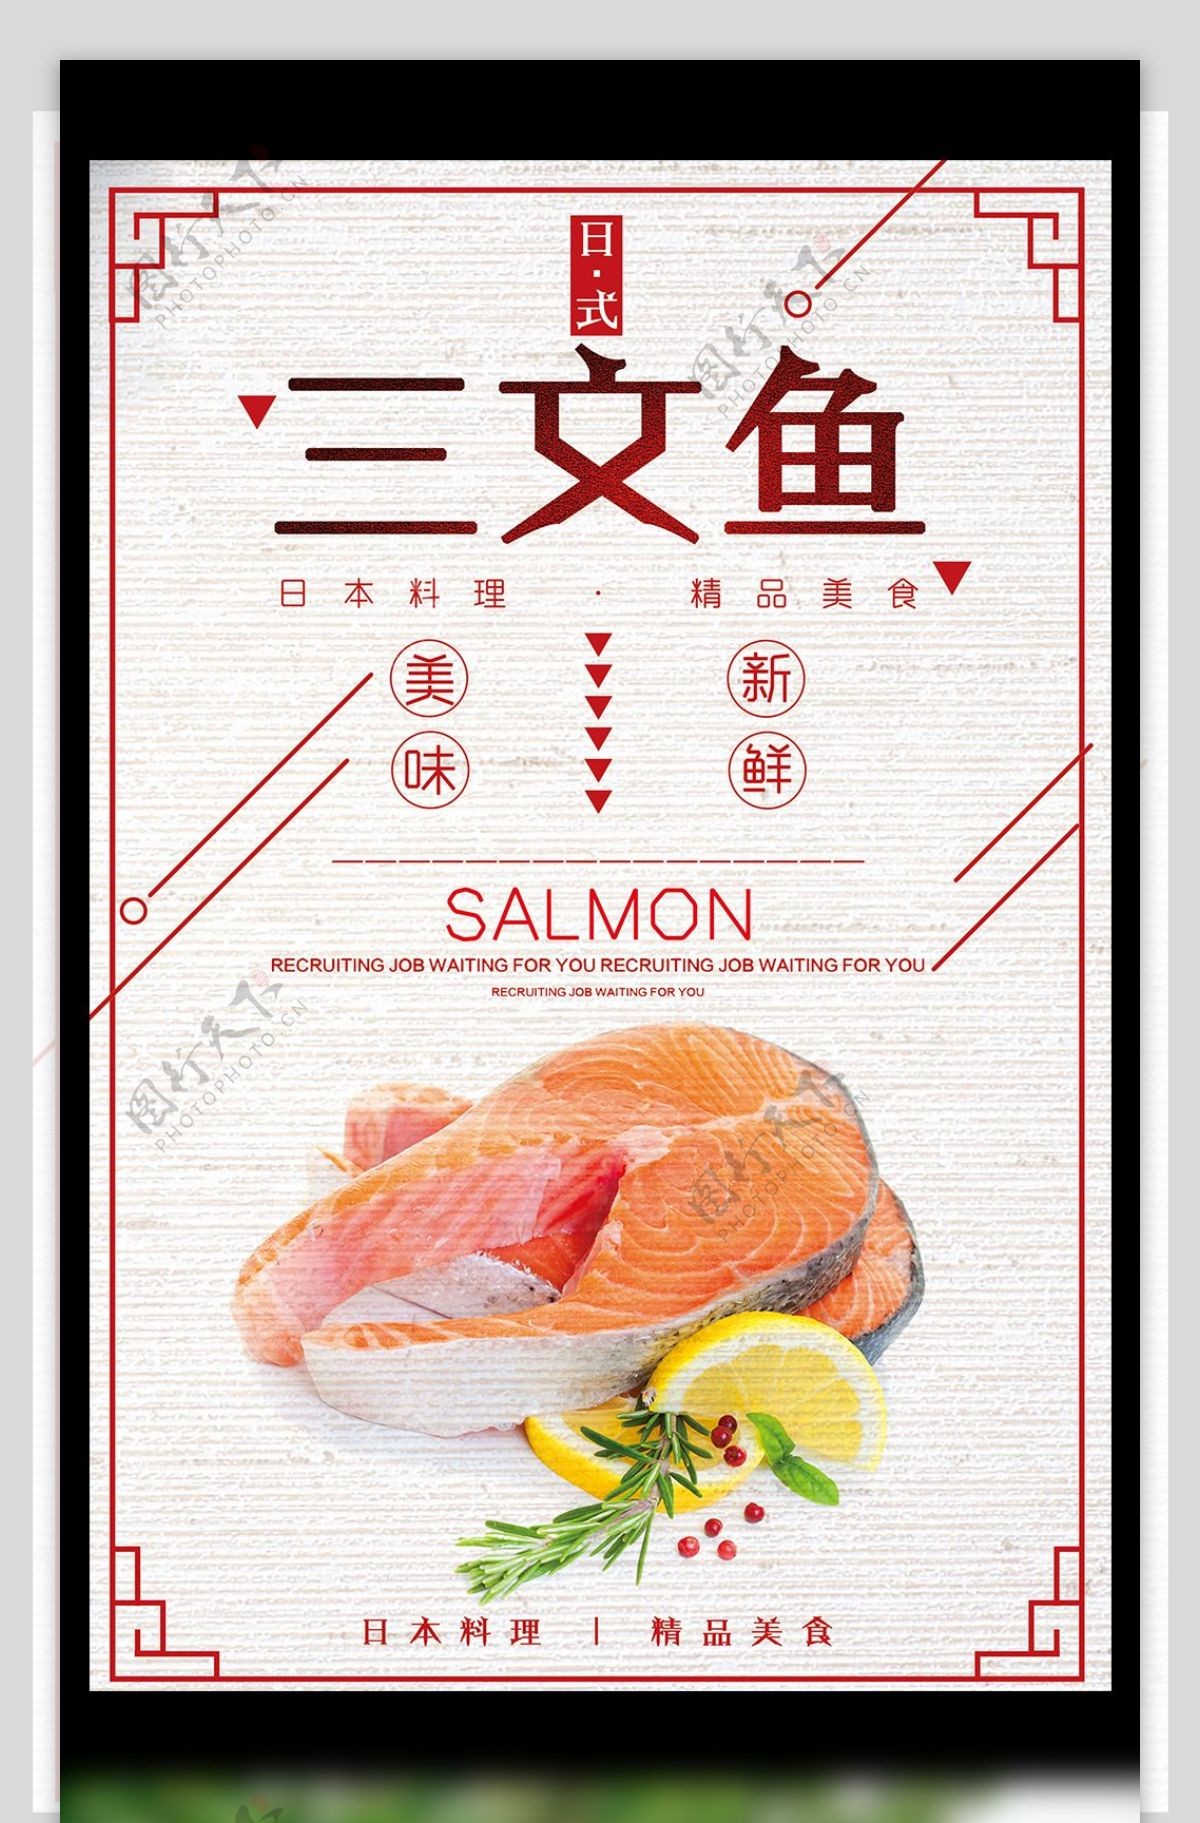 美味新鲜日式三文鱼美食宣传海报